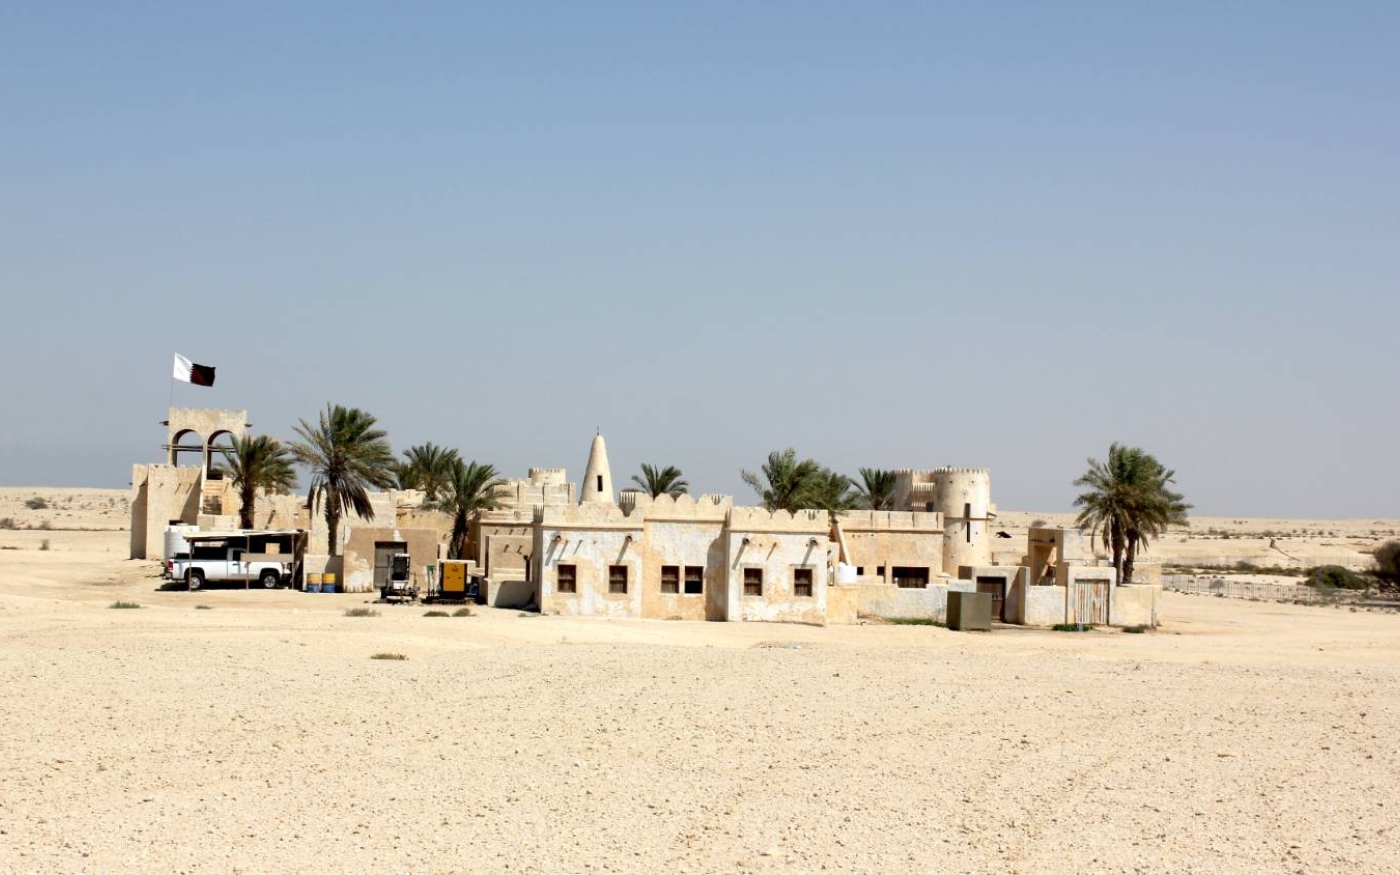 L’architecture de style bédouin de Film City dans le désert de Dukhan au Qatar était un décor de film (Isabell Schulz/Flickr)